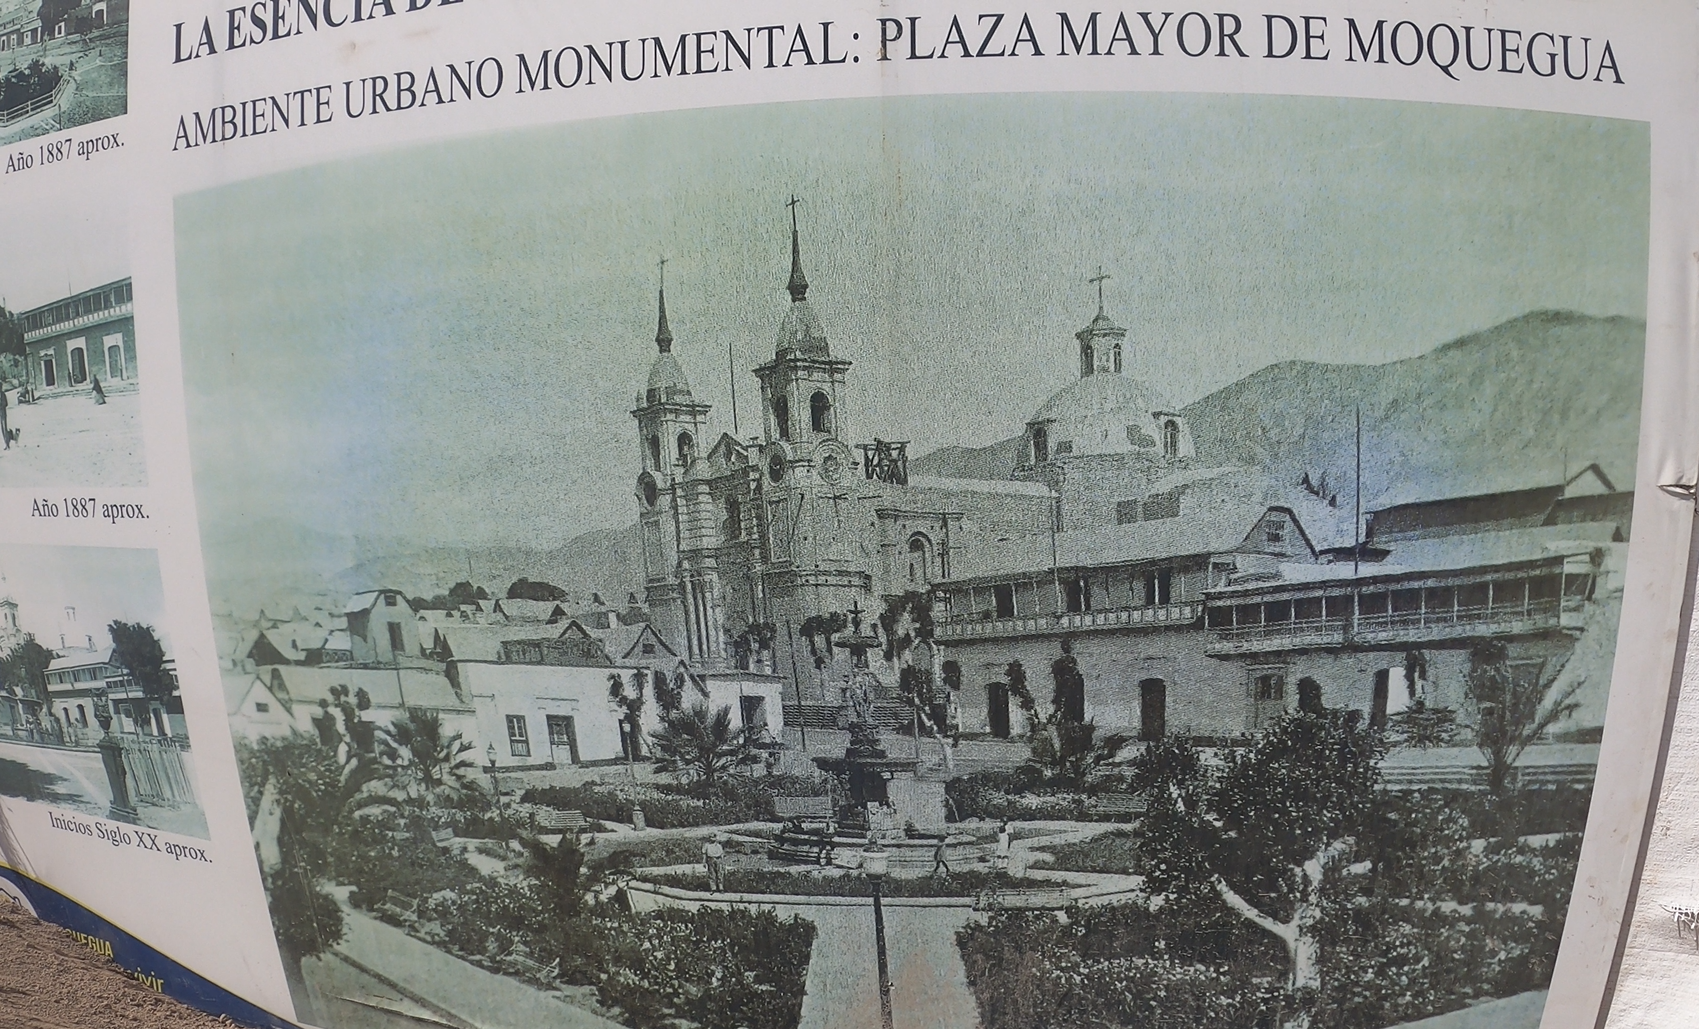 Plaza de Moquegua